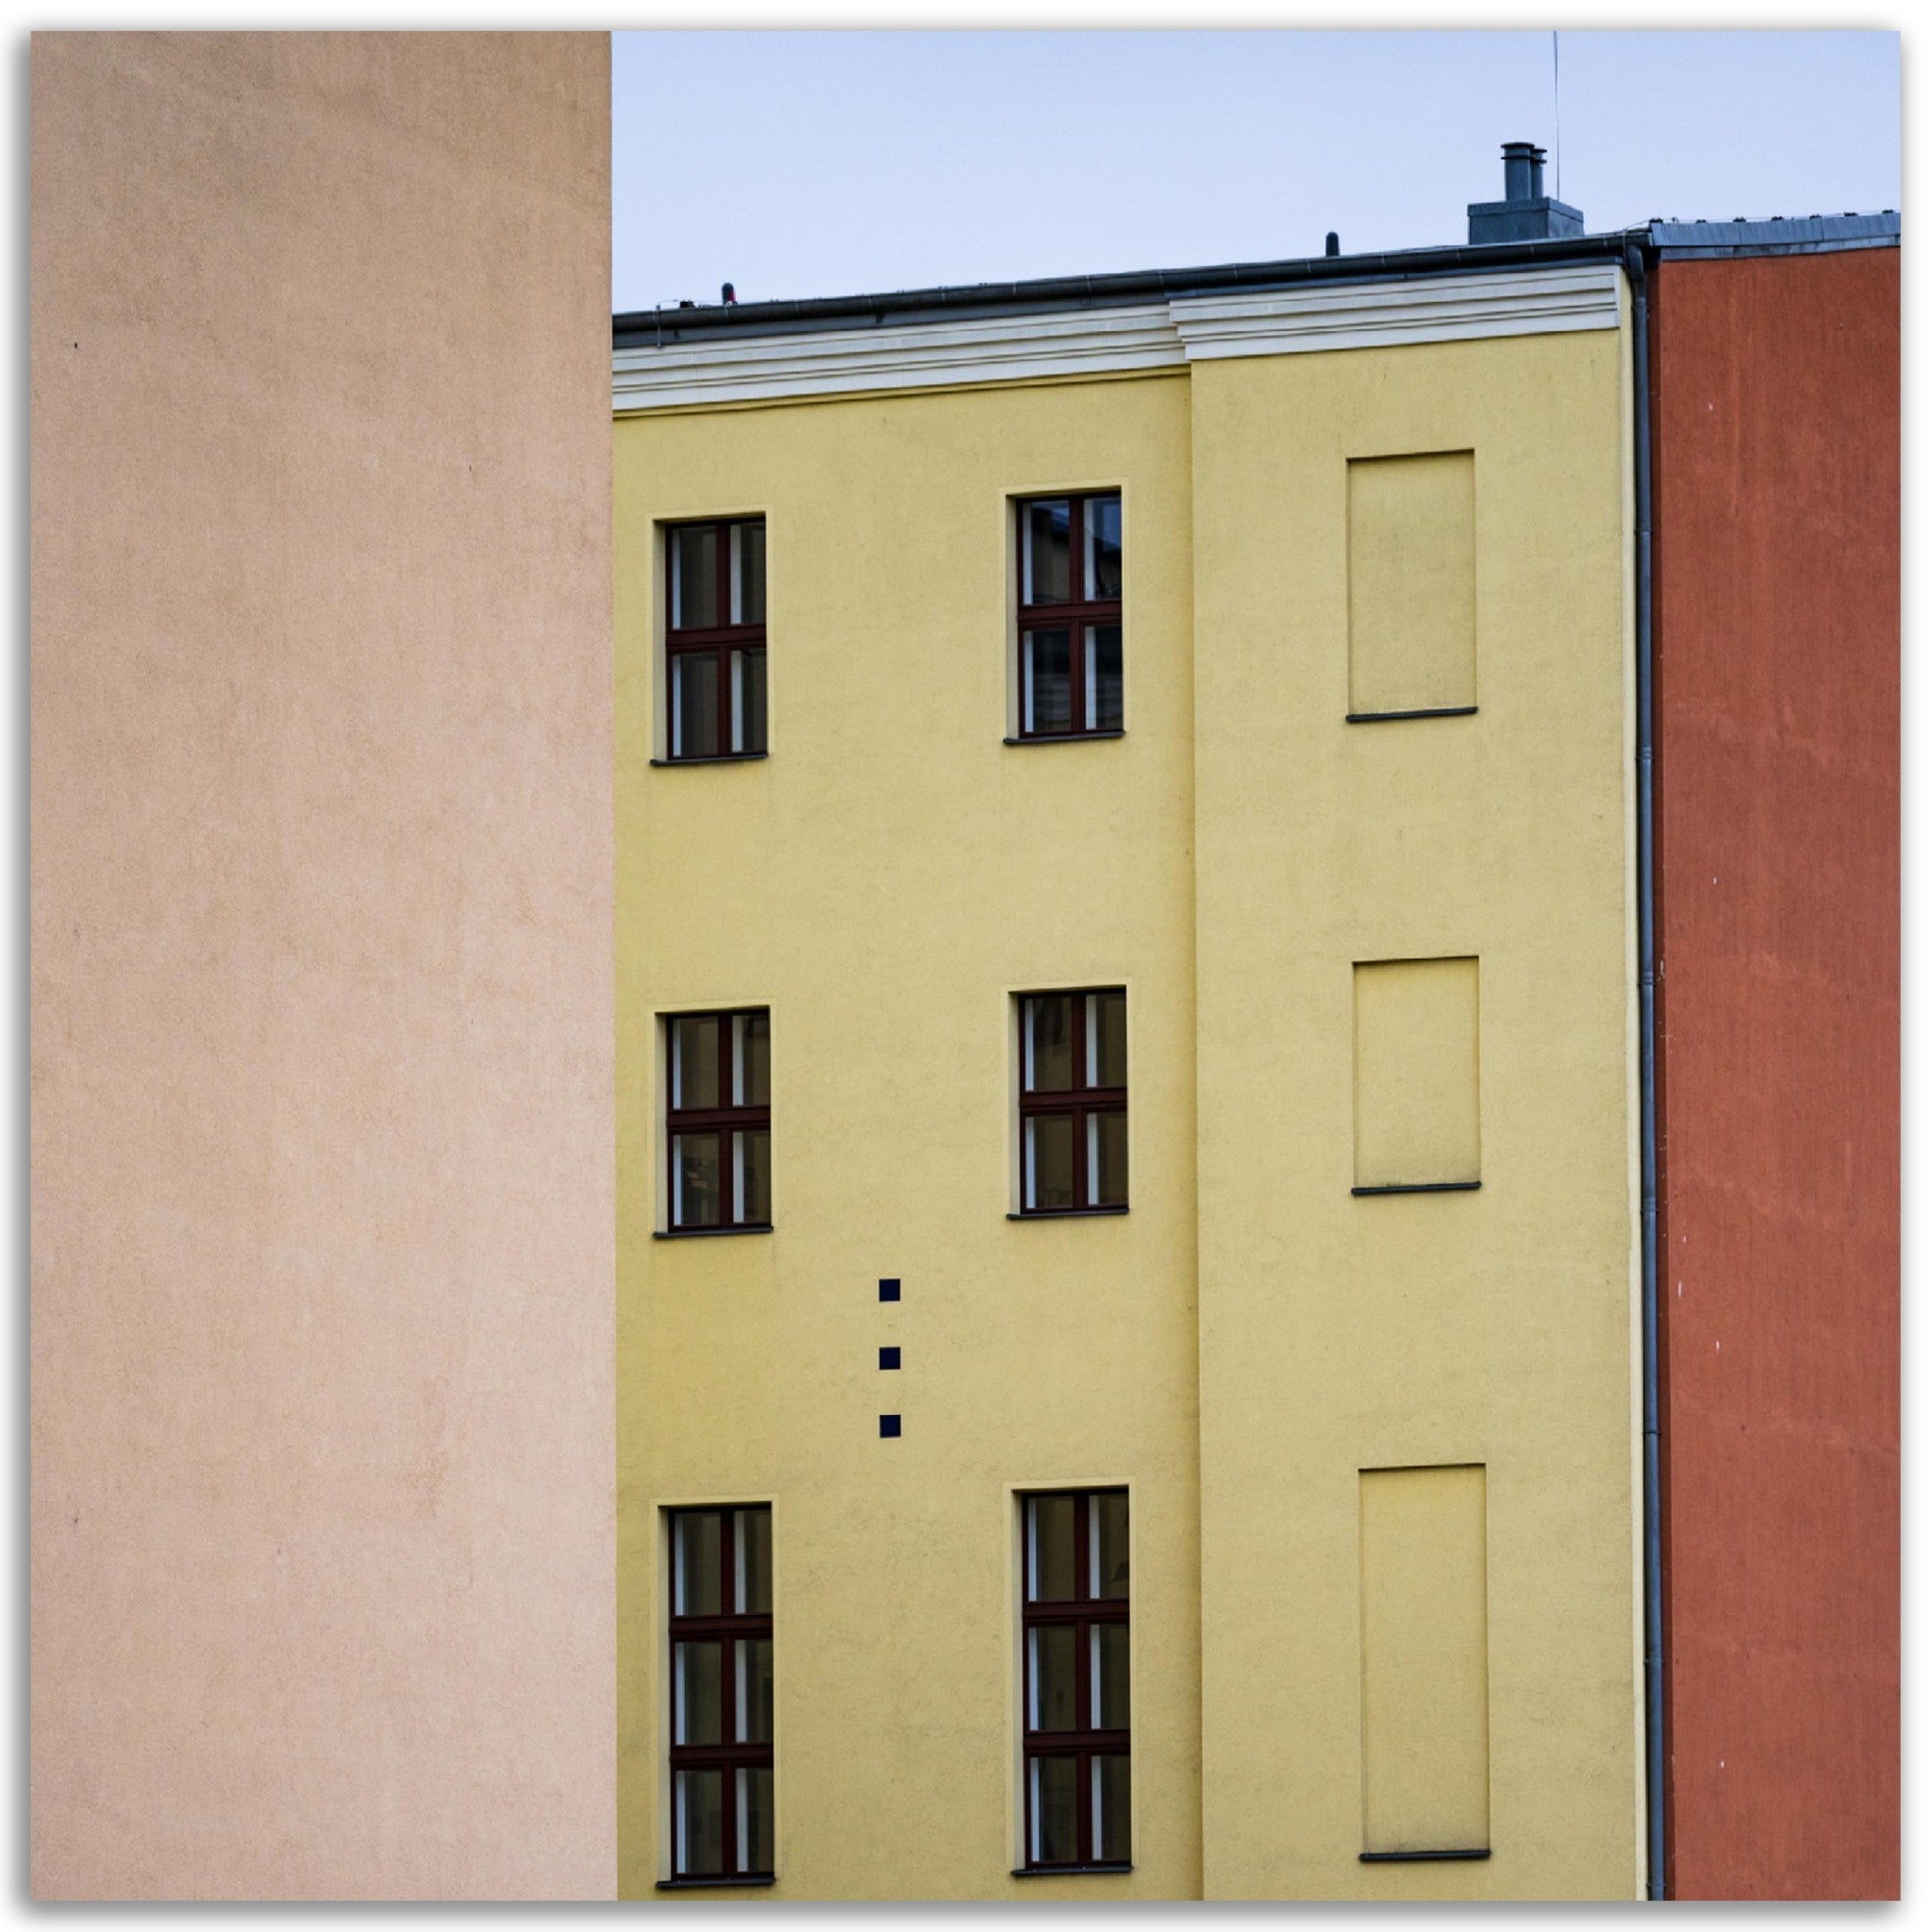 Poster métallique - Les bâtiments colorés de Berlin – Photo d'art – Décoration murale premium. La boutique de posters, créée par un photographe français, vous propose le meilleur de la photographie combiné à la décoration murale pour transformer votre intérieur en une galerie d'art intemporelle.